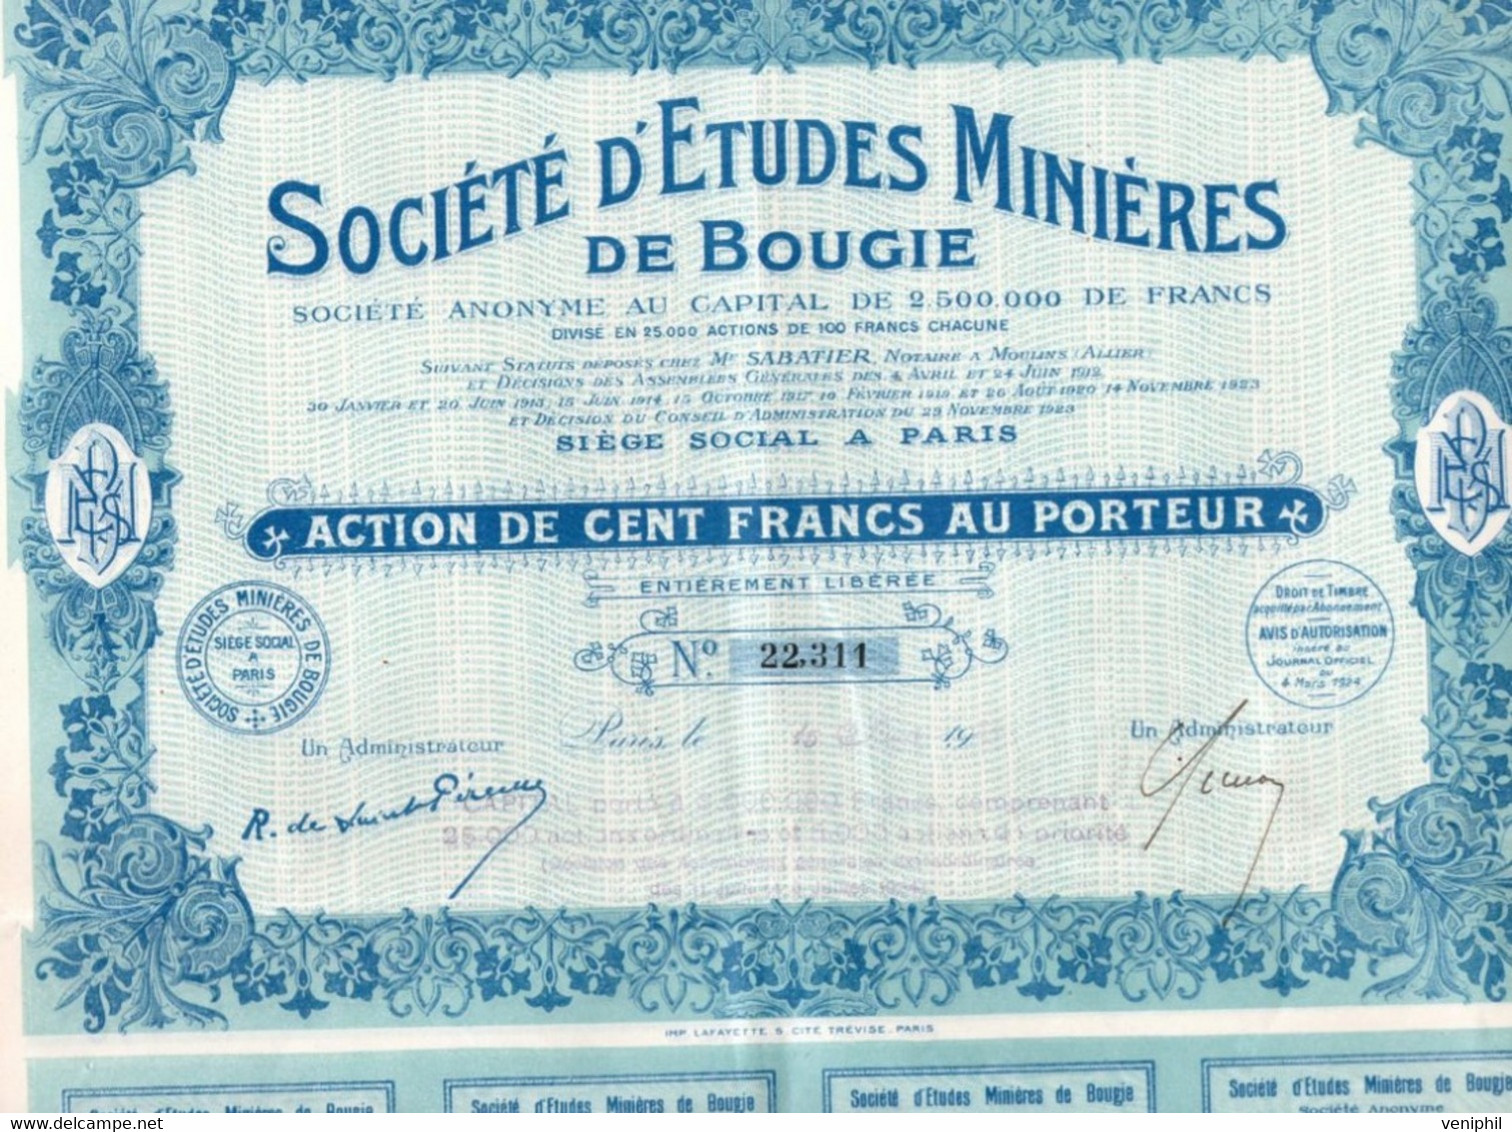 SOCIETE D'ETUDES MINIERES DE BOUGIE - ACTION DE CENT FRANCS -ANNEE 1924 - Mines